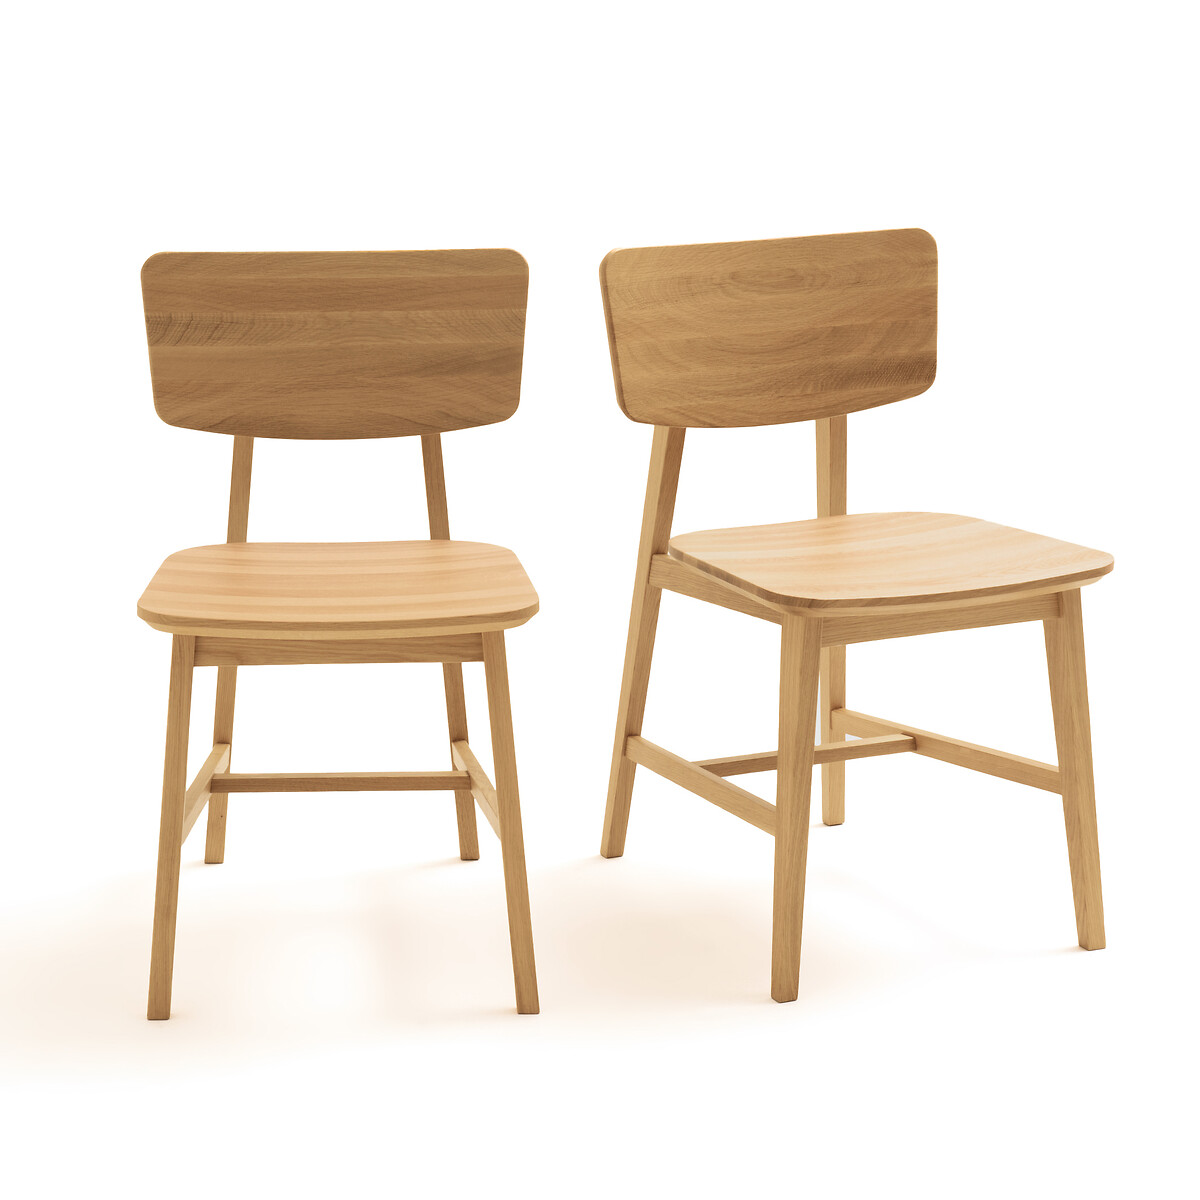 Комплект из 2 винтажных стульев из массива дуба Aya единый размер каштановый комплект из 2 больших журнальных столиков вставляемых друг в друга из дуба vova единый размер каштановый